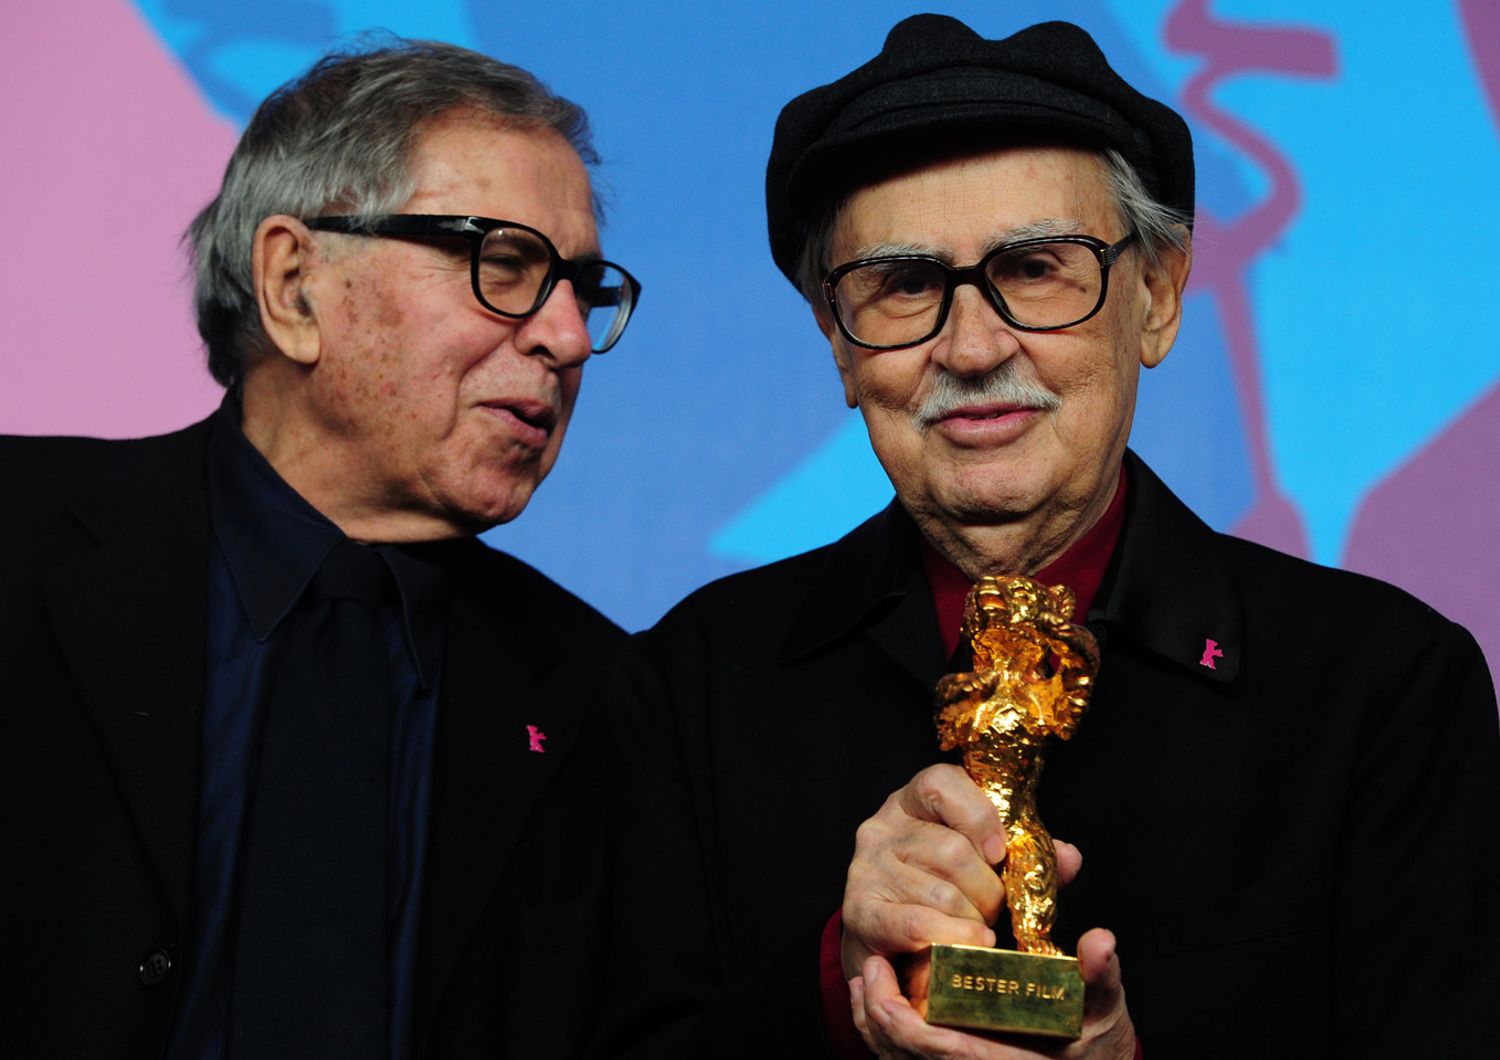 &nbsp;Paolo e Vittorio Taviani con l'Orso d'Oro vinto per 'Cesare deve morire' nel 2012